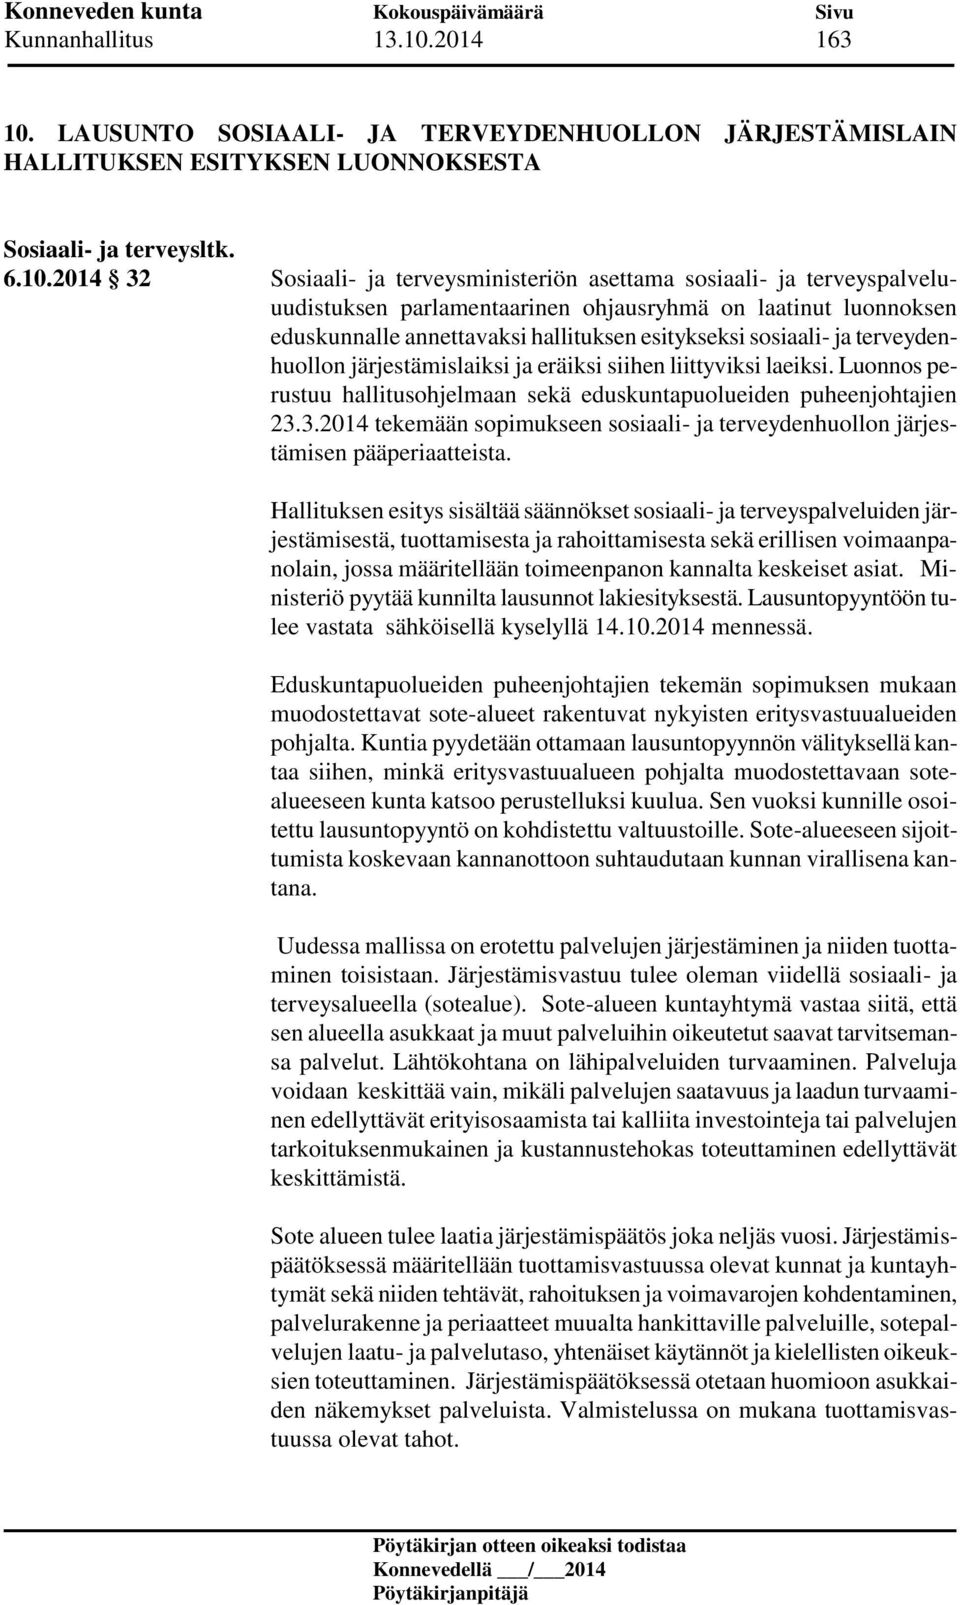 LAUSUNTO SOSIAALI- JA TERVEYDENHUOLLON JÄRJESTÄMISLAIN HALLITUKSEN ESITYKSEN LUONNOKSESTA Sosiaali- ja terveysltk. 6.10.